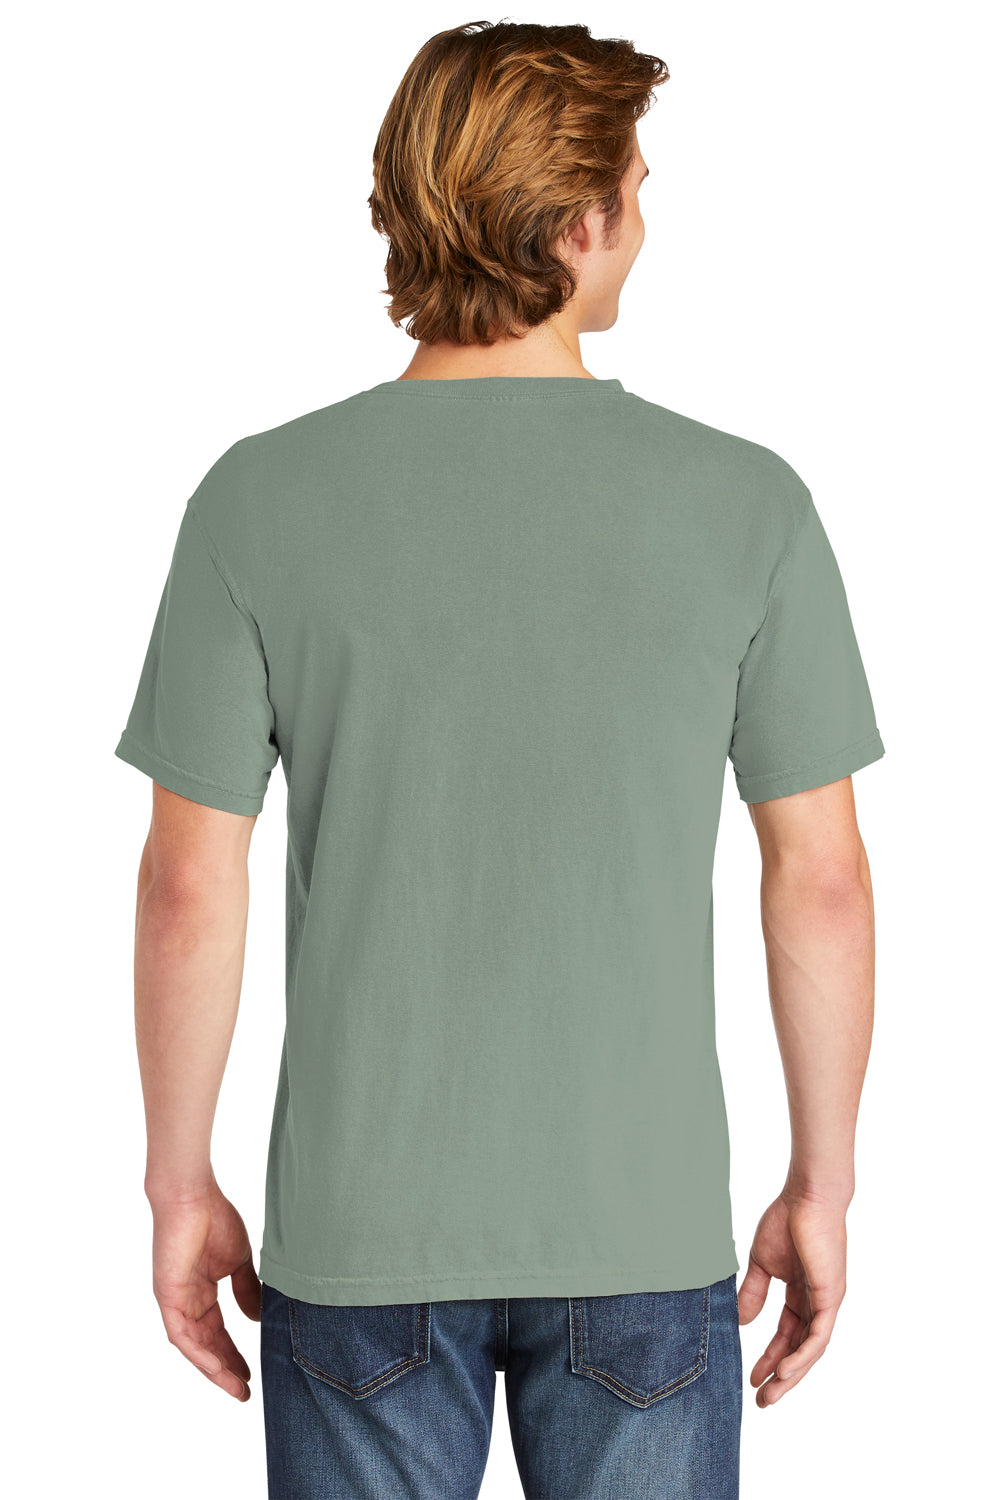 Comfort Colors Mens Short Sleeve Crewneck T-Shirt Bay Green Back